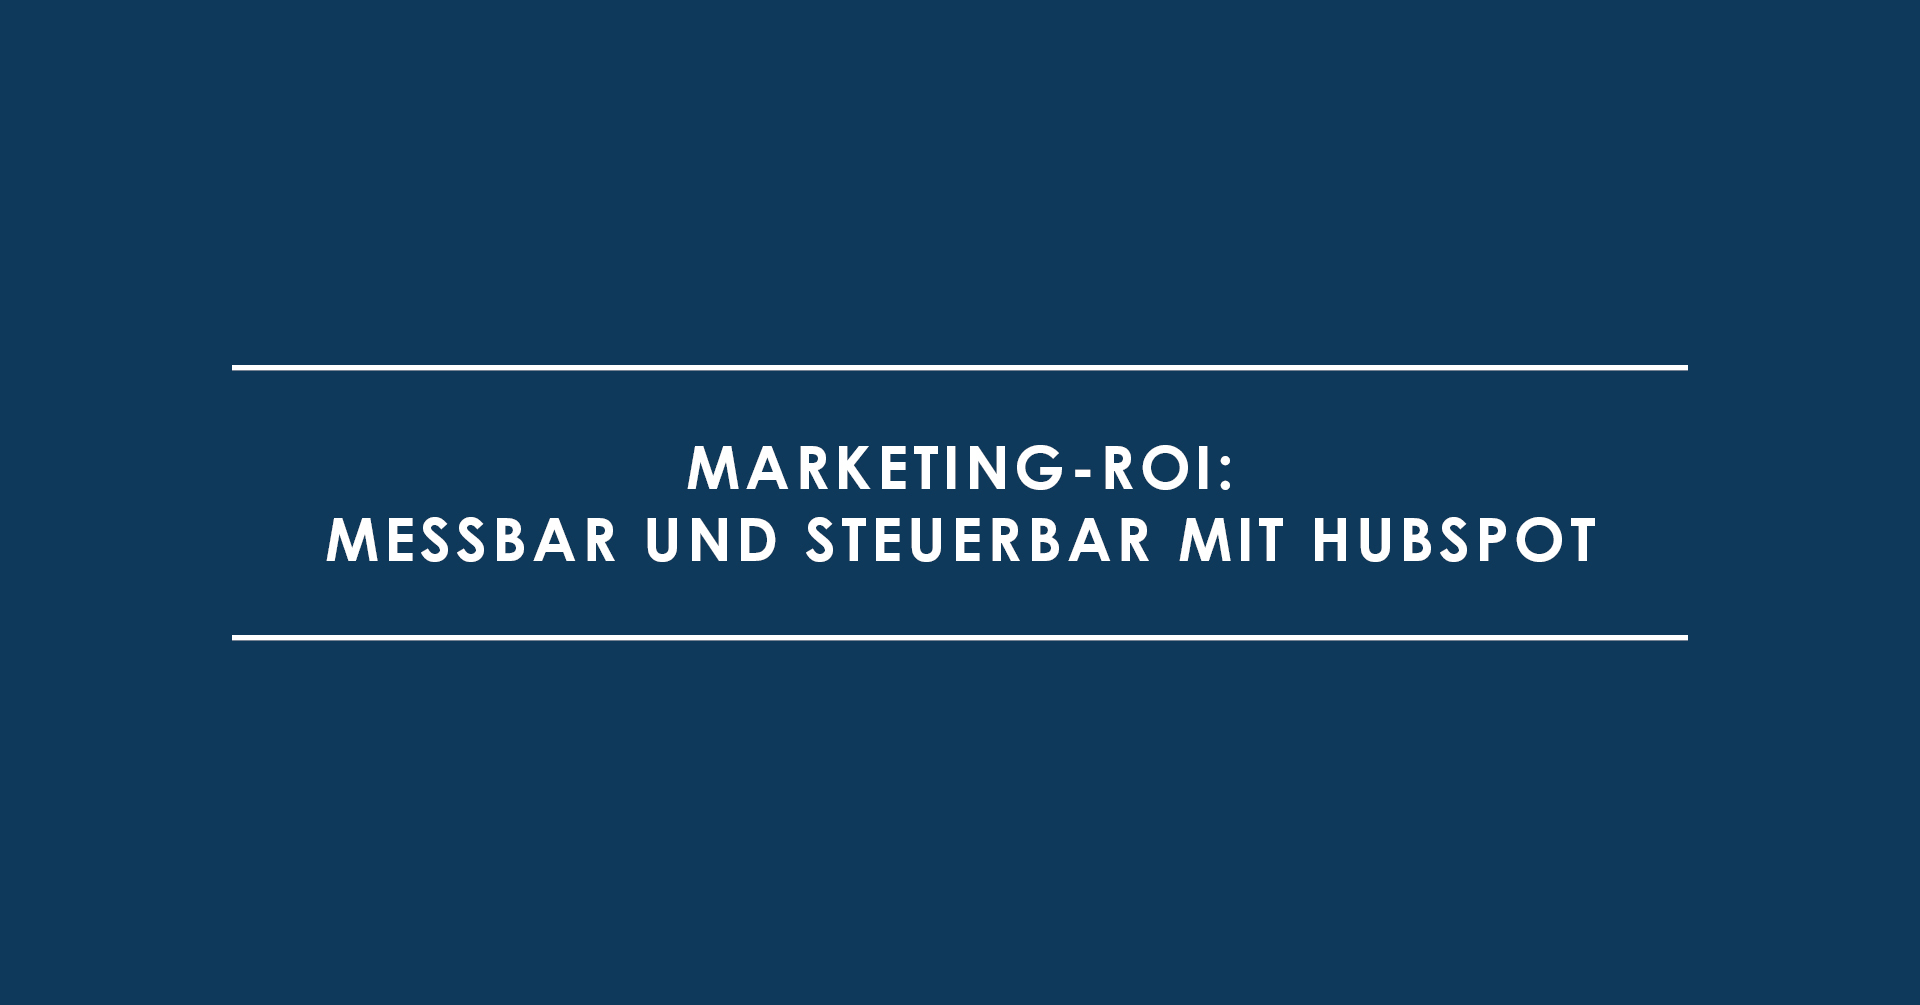 Marketing-ROI: messbar und steuerbar mit HubSpot